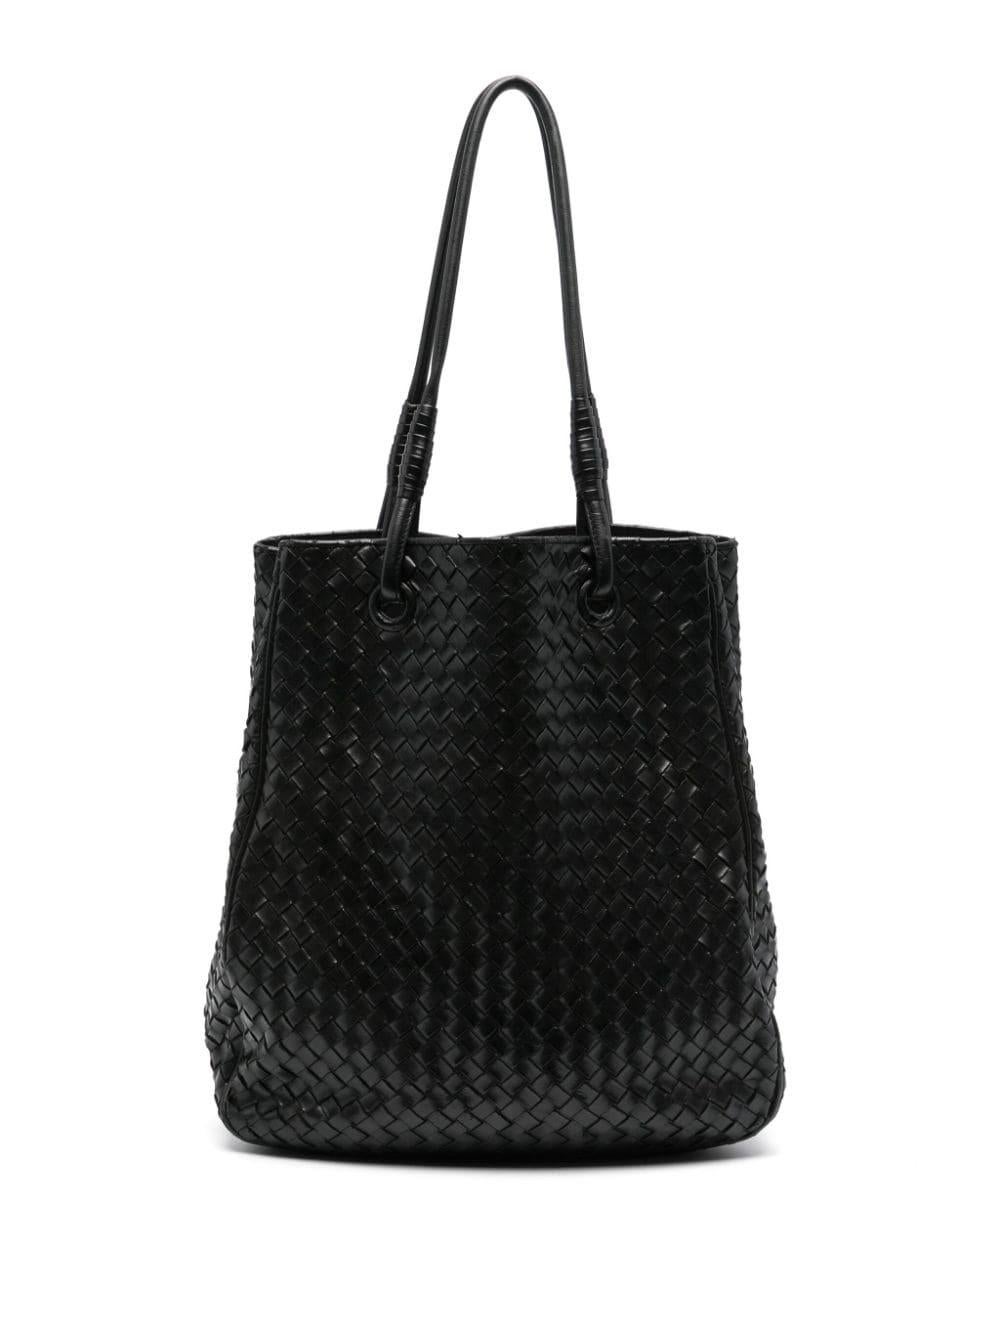 Bottega Veneta Black Leather Intrecciato Tote Bag 3